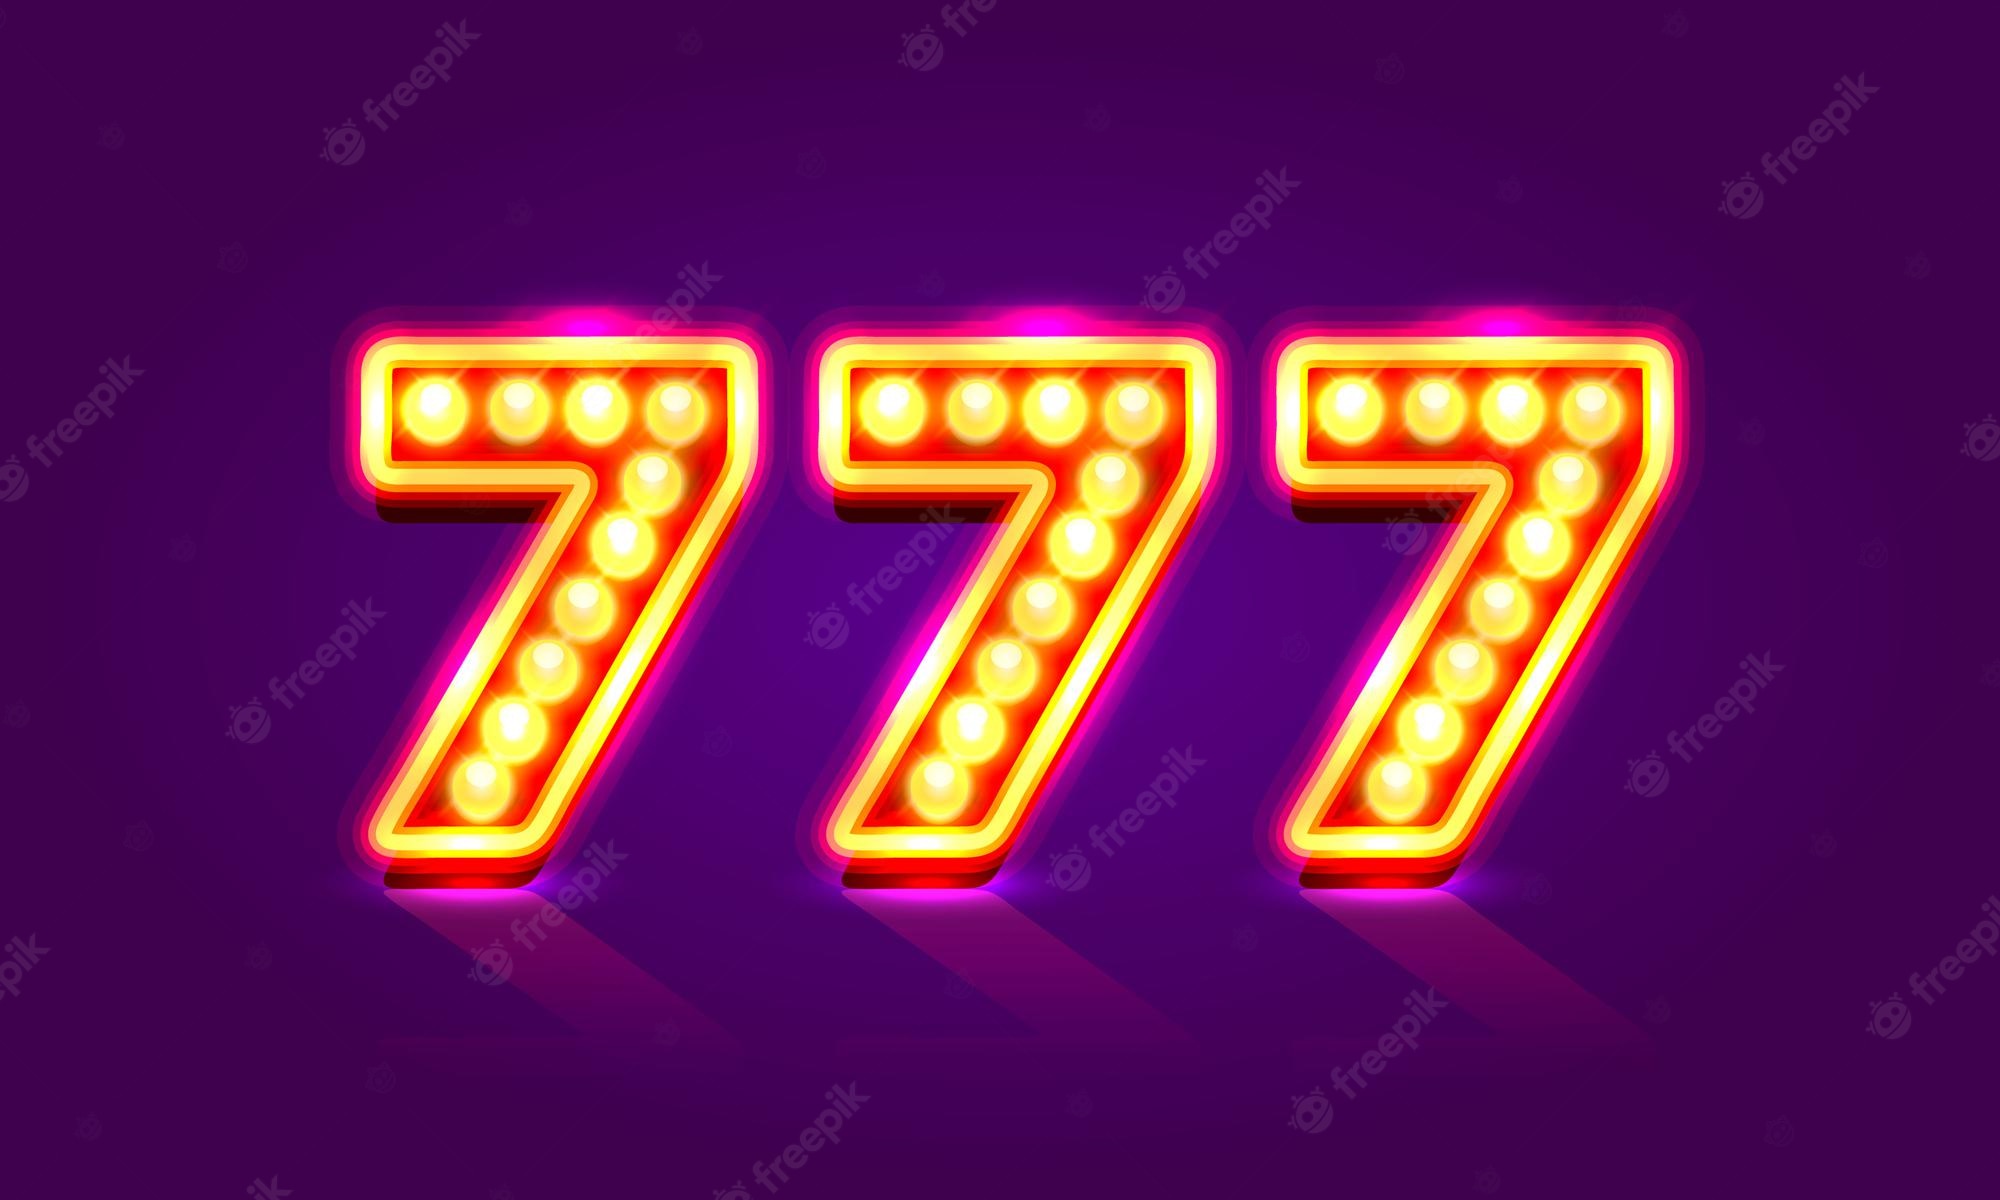 이미지:casino-777-neon-signboard-winner-triple-sevens-casino-jackpot-icon-lucky-number-vector-illustration_3482-3049.jpg